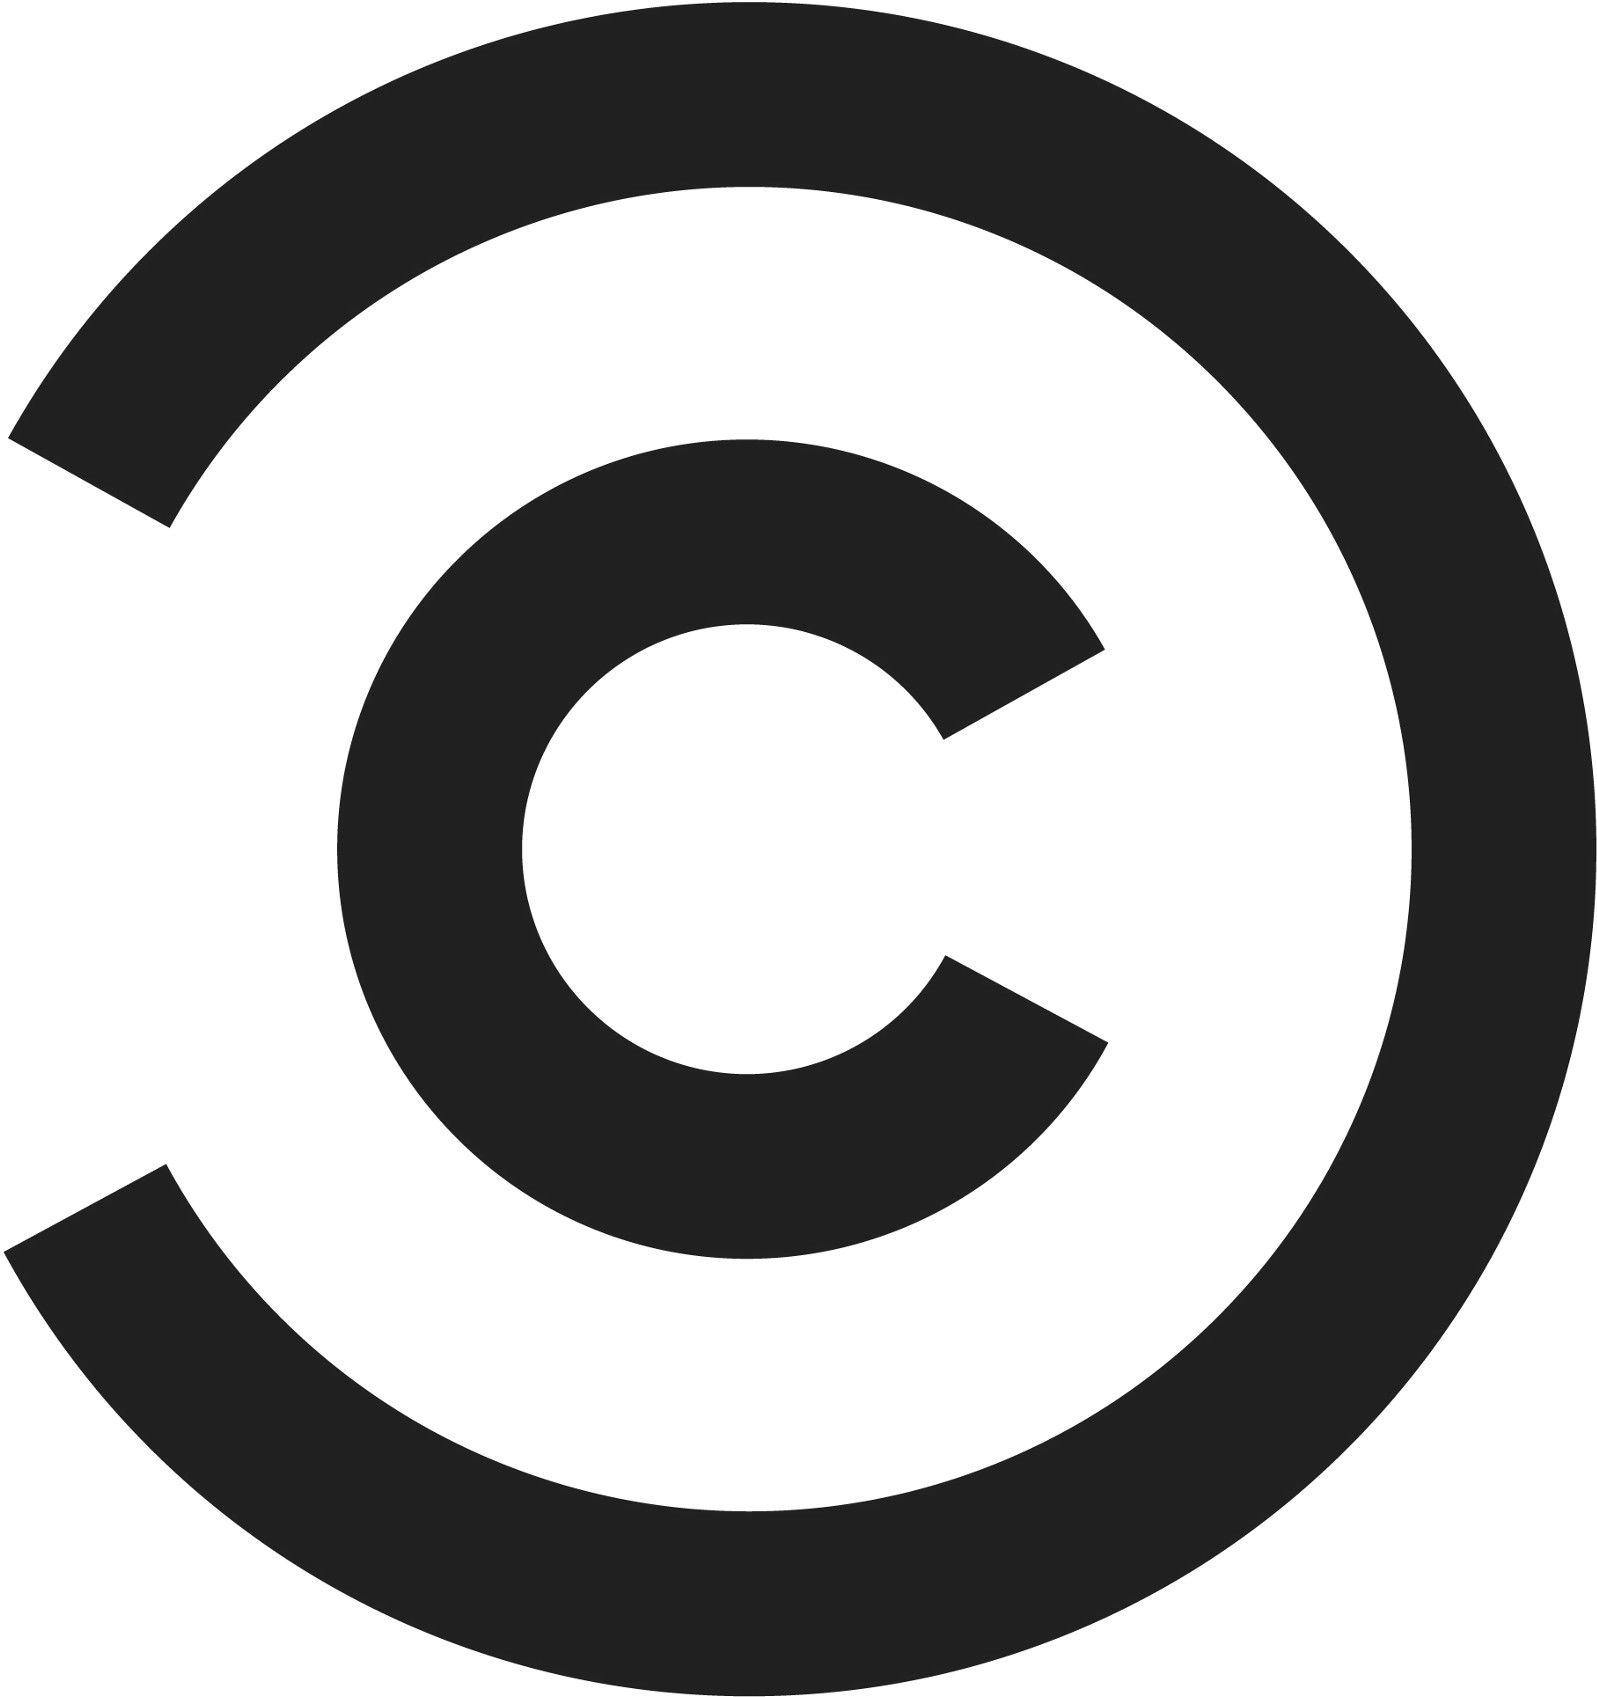 Black C in Circle Logo - Circular Reasoning